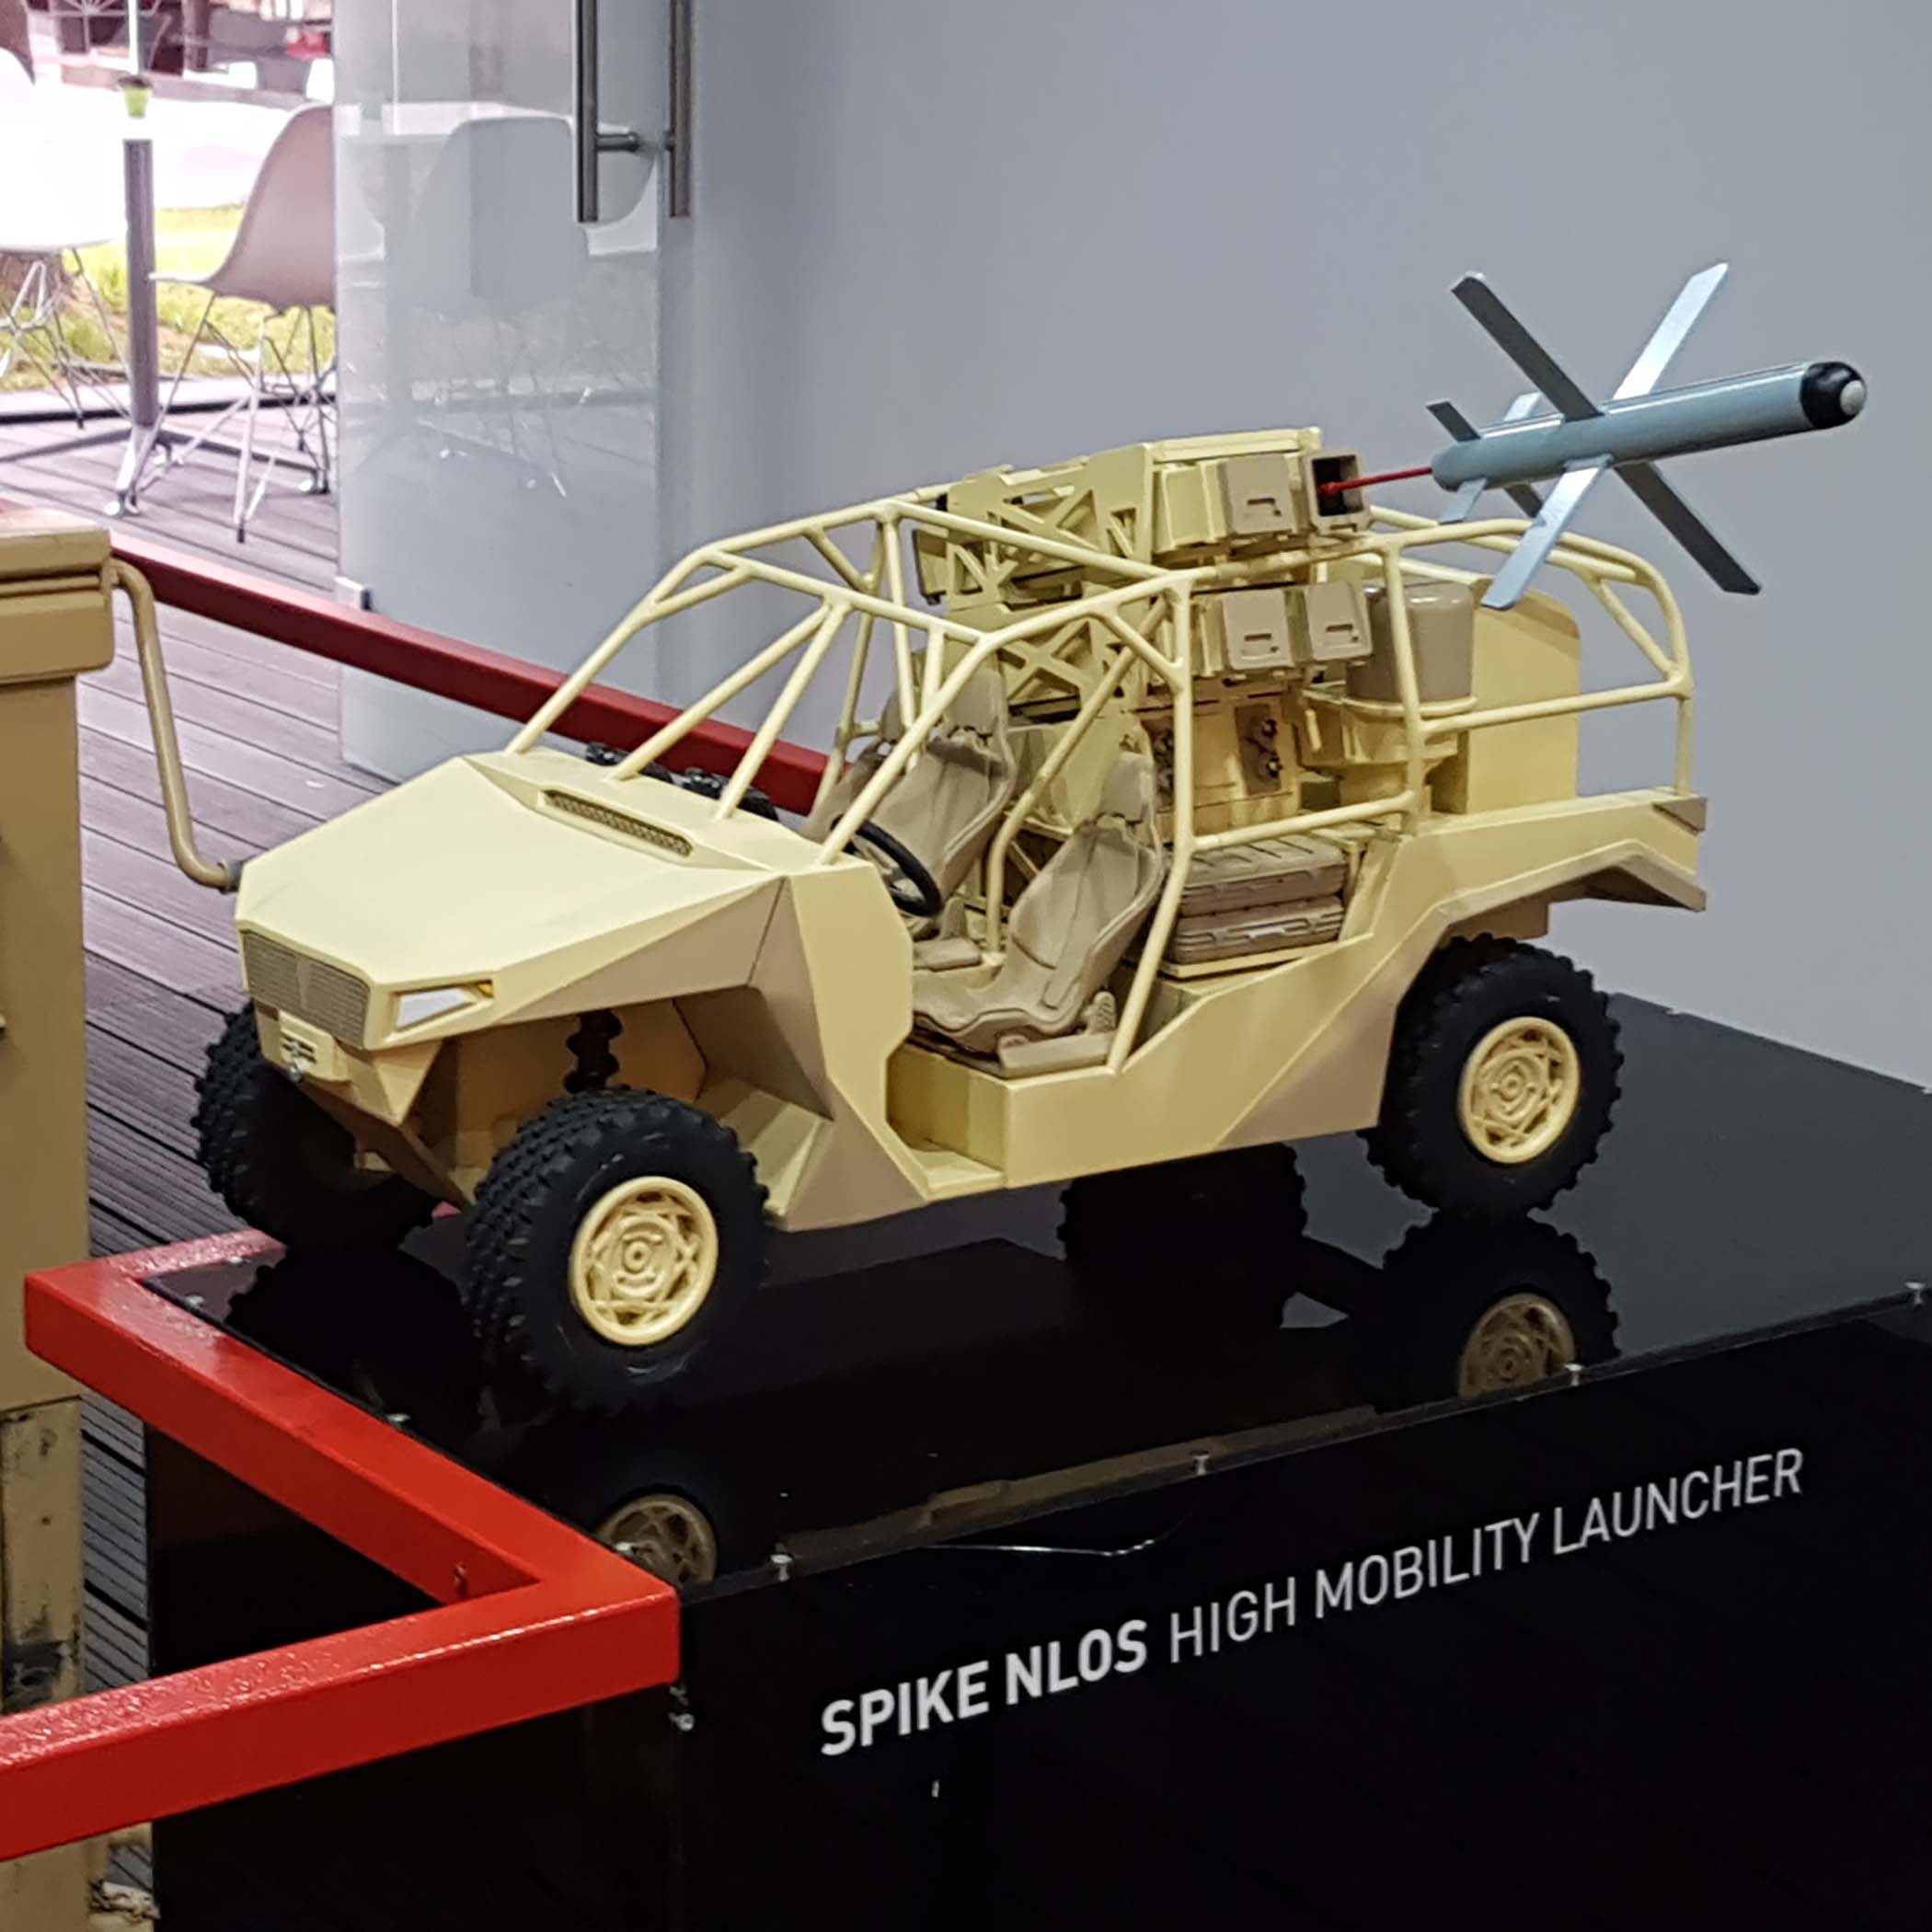 דגם של רכב צבאי משגר טיל